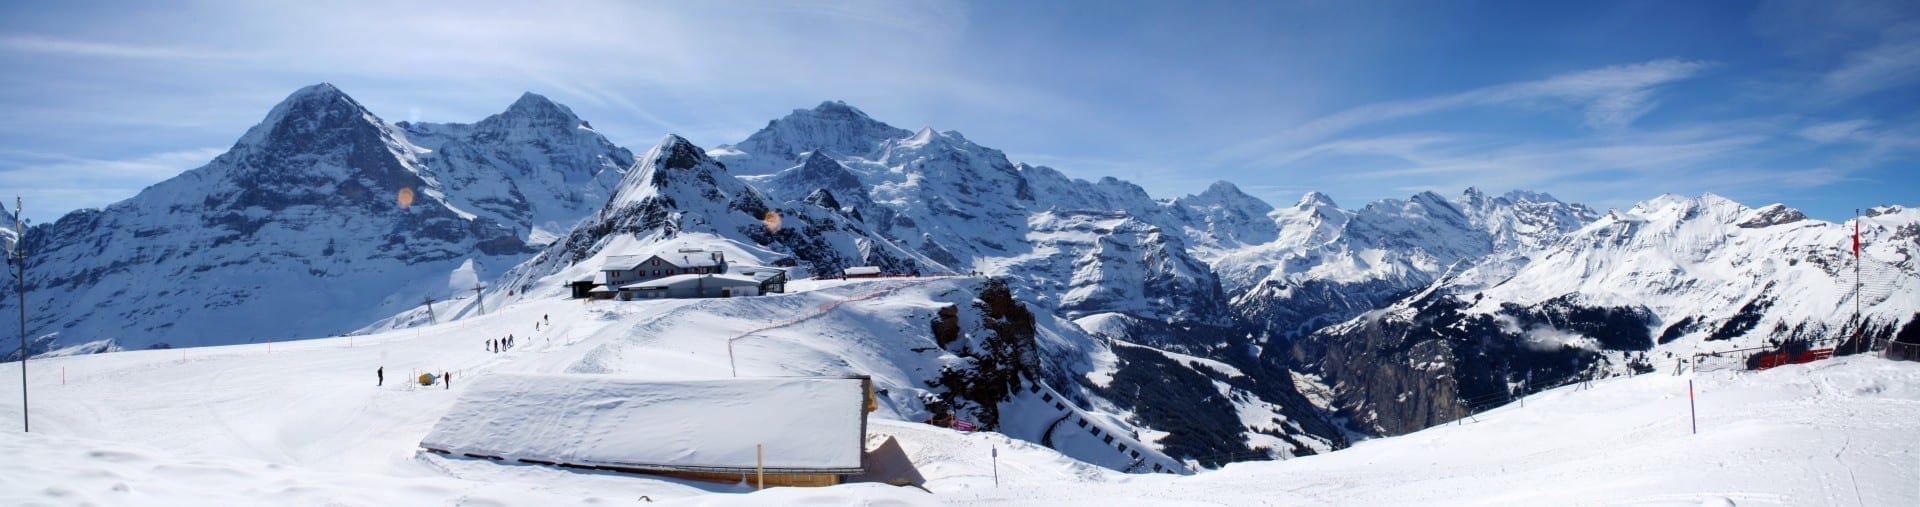 Región de deportes de invierno de Jungfrau Interlaken Suiza